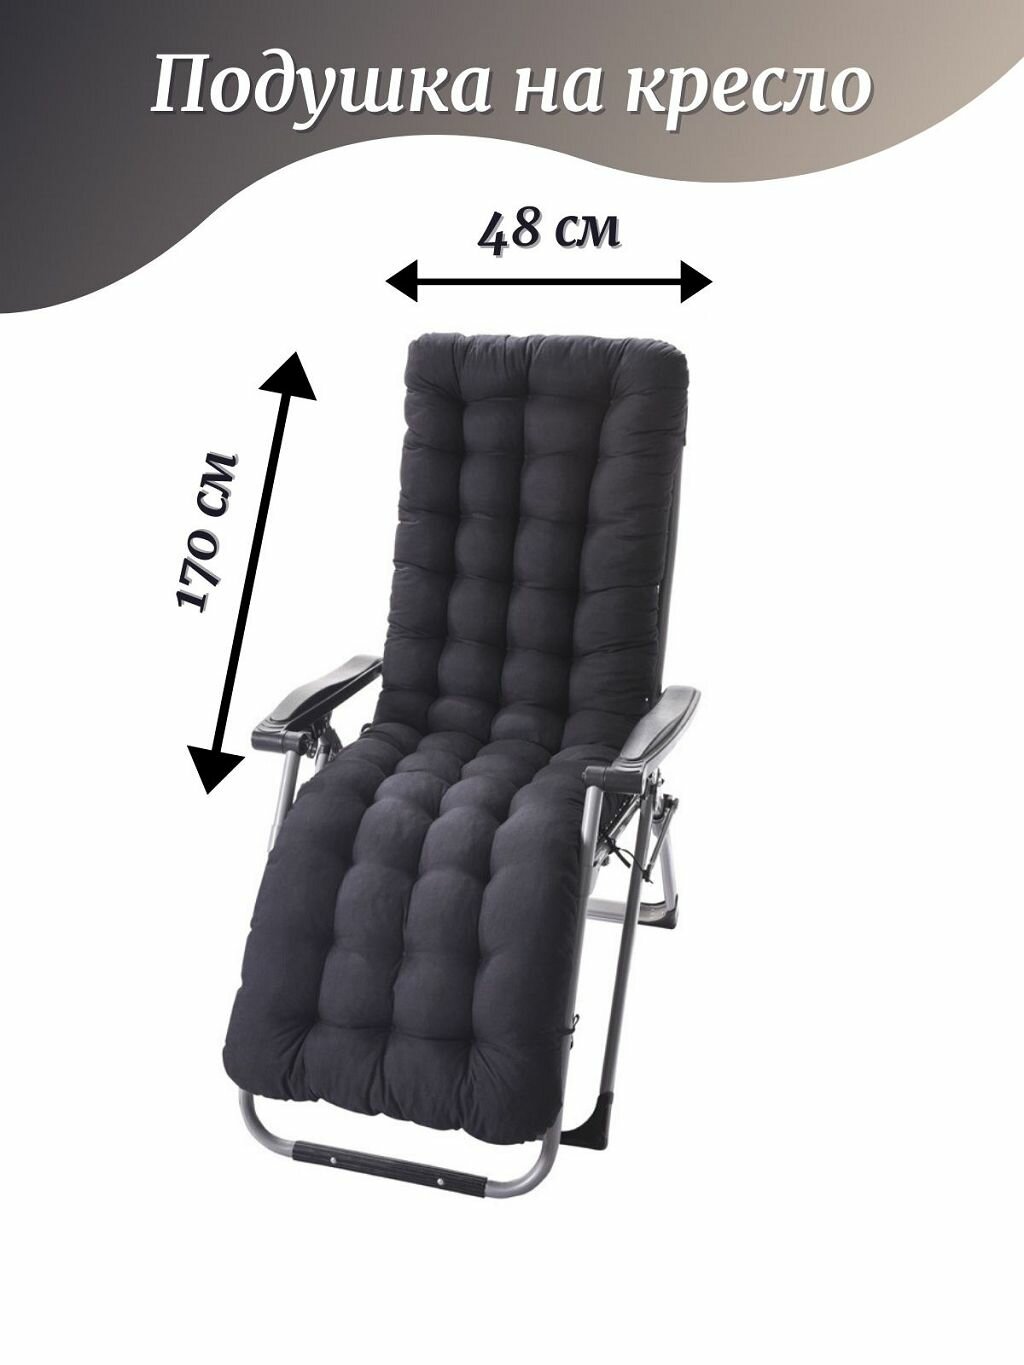 Подушка на кресло со спинкой 48х170х8 см, черная (Т40-2387)